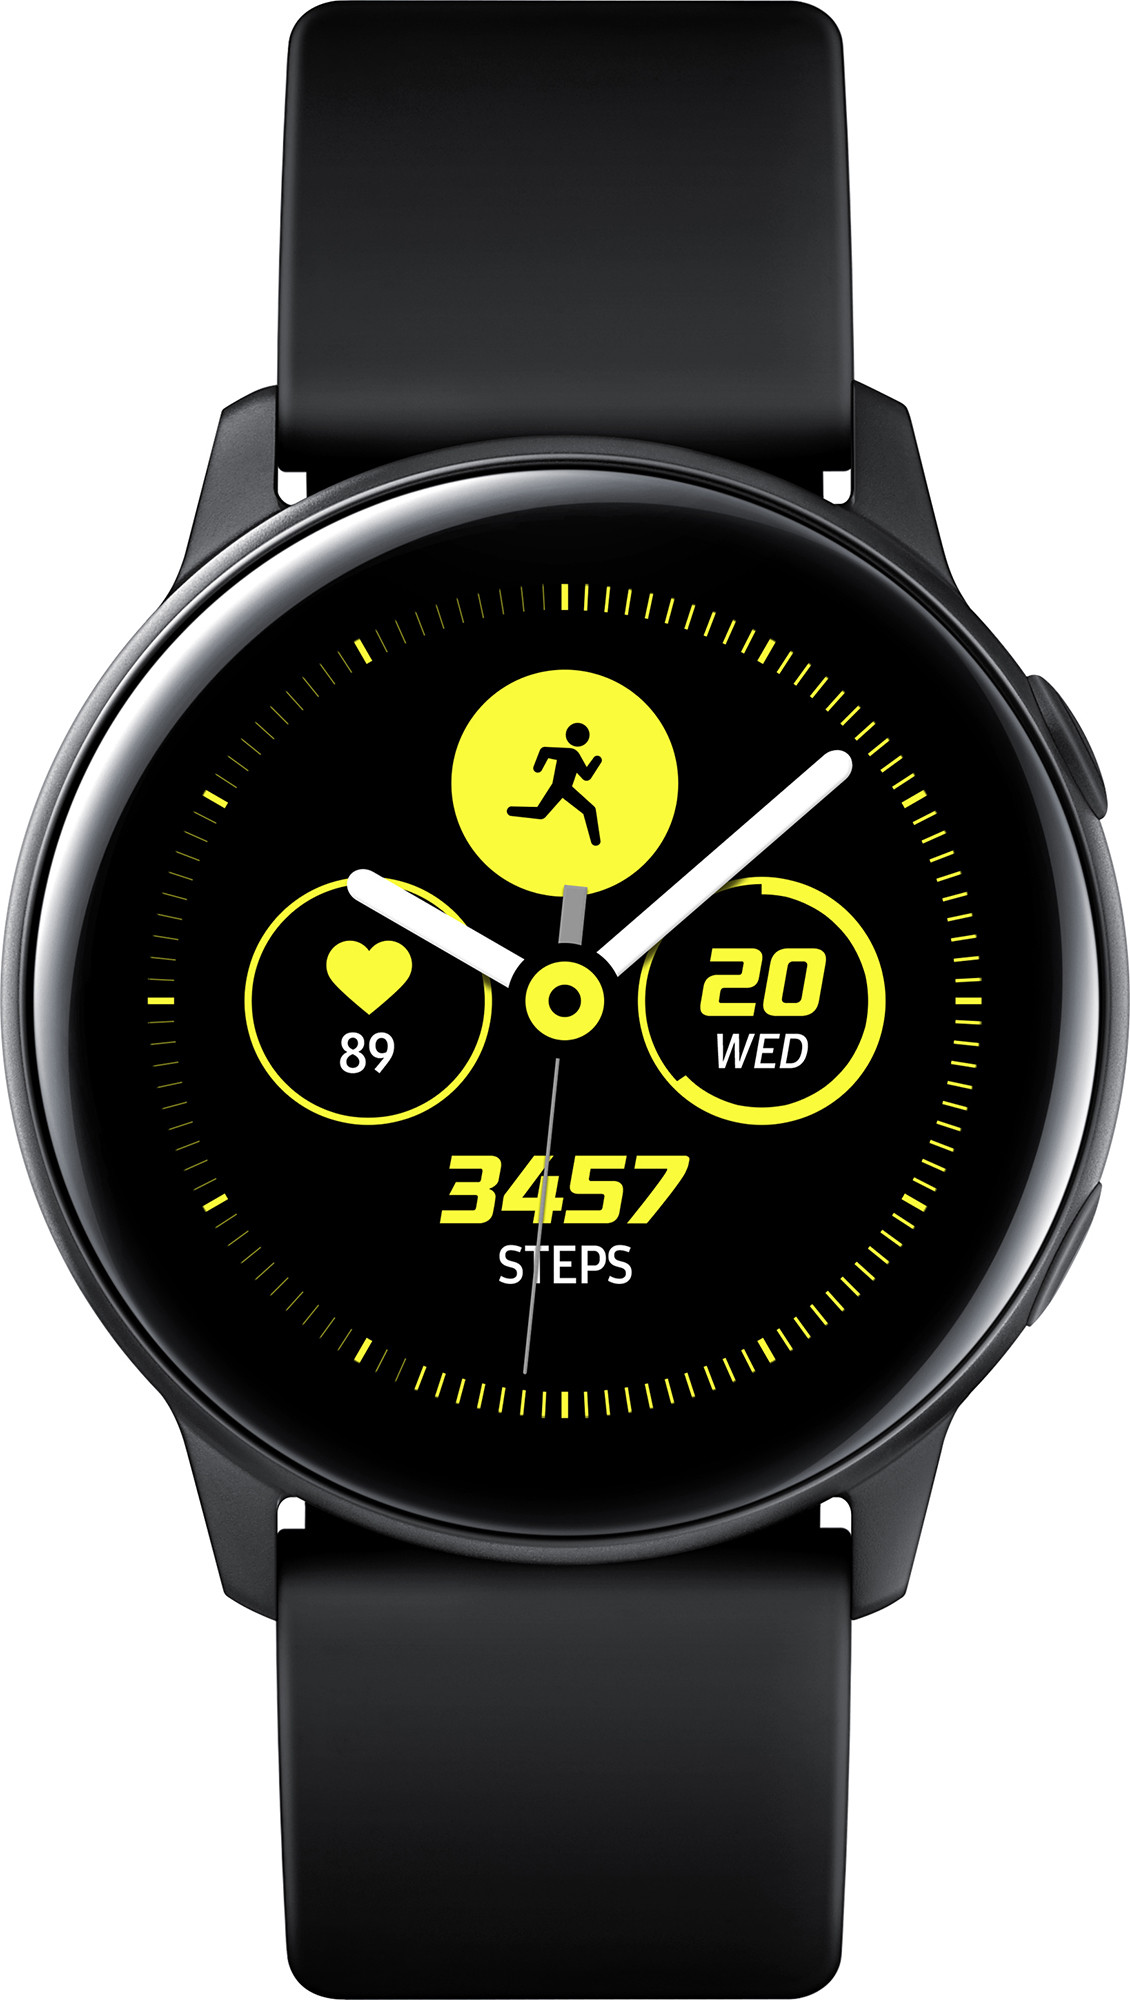 Смарт-часы Samsung Galaxy Watch Active Black (SM-R500NZKASEK) в Киеве